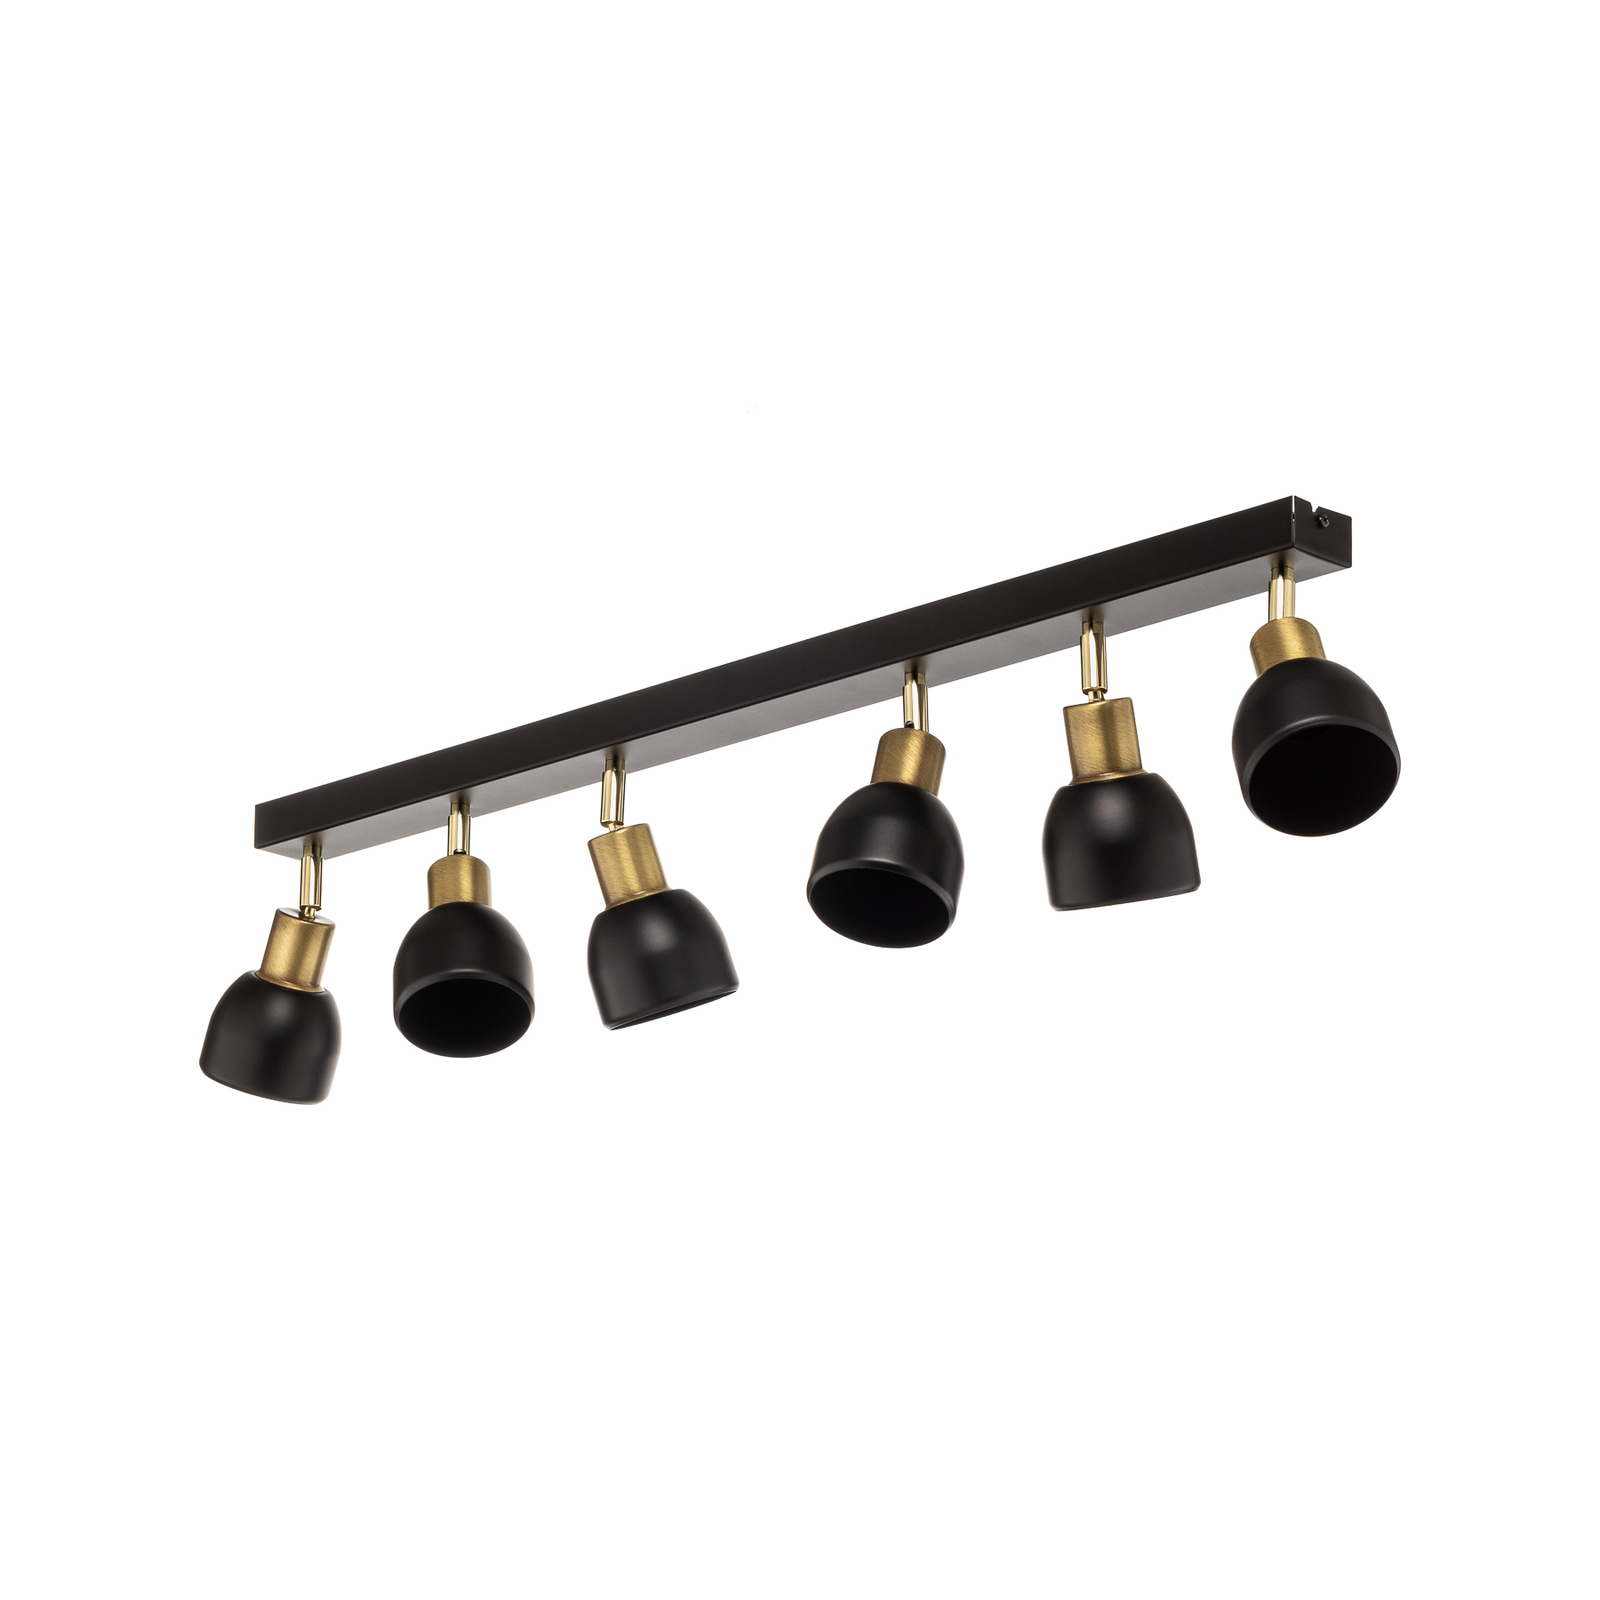 Frano takspotlight, seks lamper i svart/gull